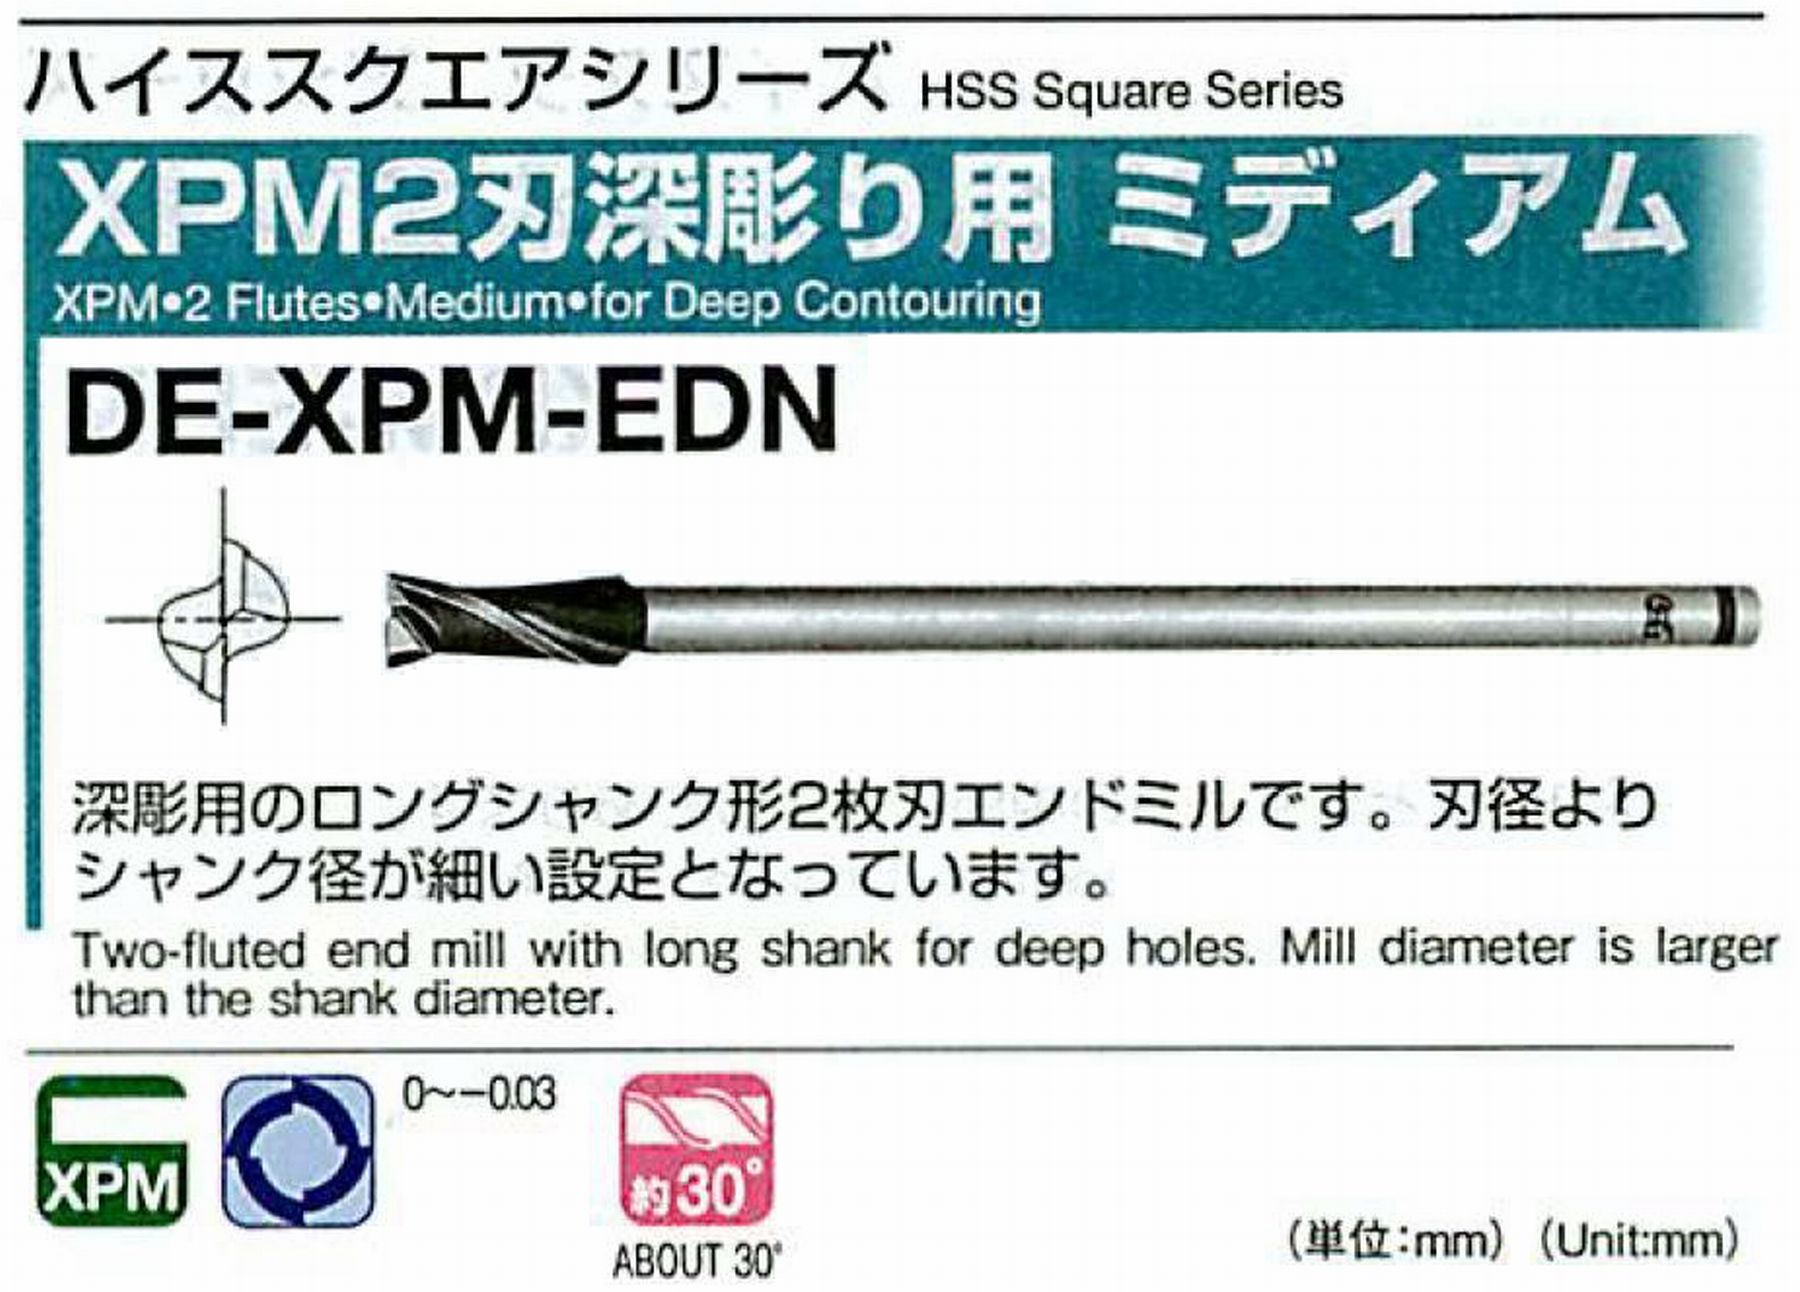 オーエスジー/OSG XPM2刃深彫り用 ミディアム DE-XPM-EDN 外径10 全長100 刃長25 シャンク径8mm